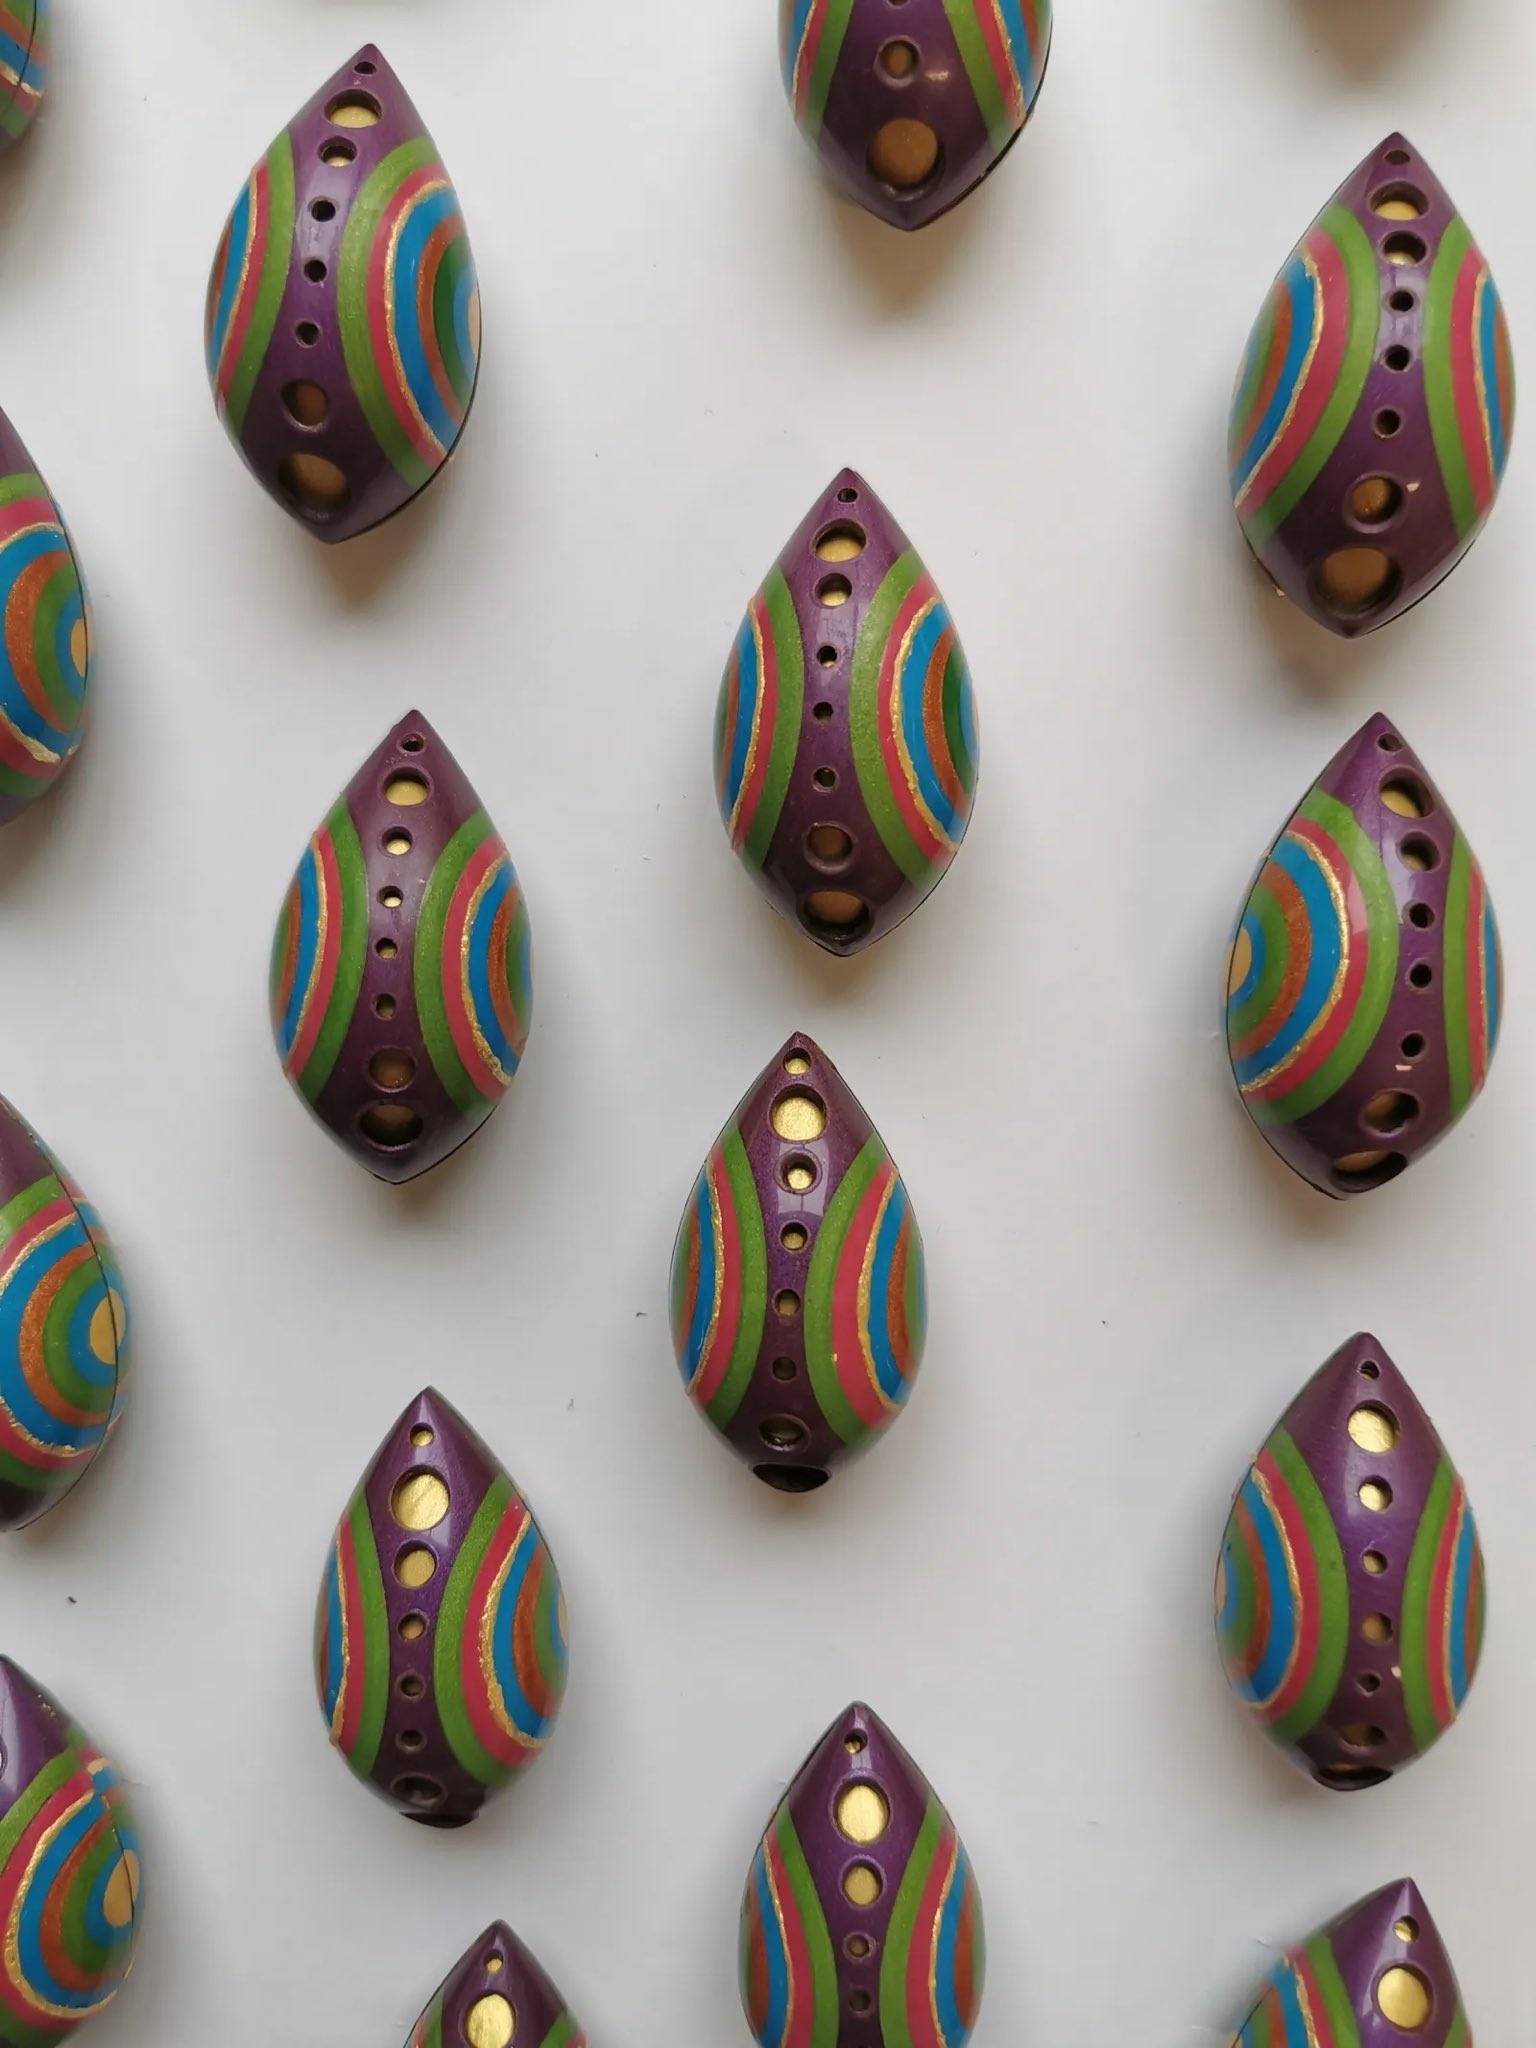 웡카 촬영 때 사용된 실제 초콜릿들을 만든 쇼콜라티에분이 올려주신 웡카 초콜릿 사진들.twt | 인스티즈